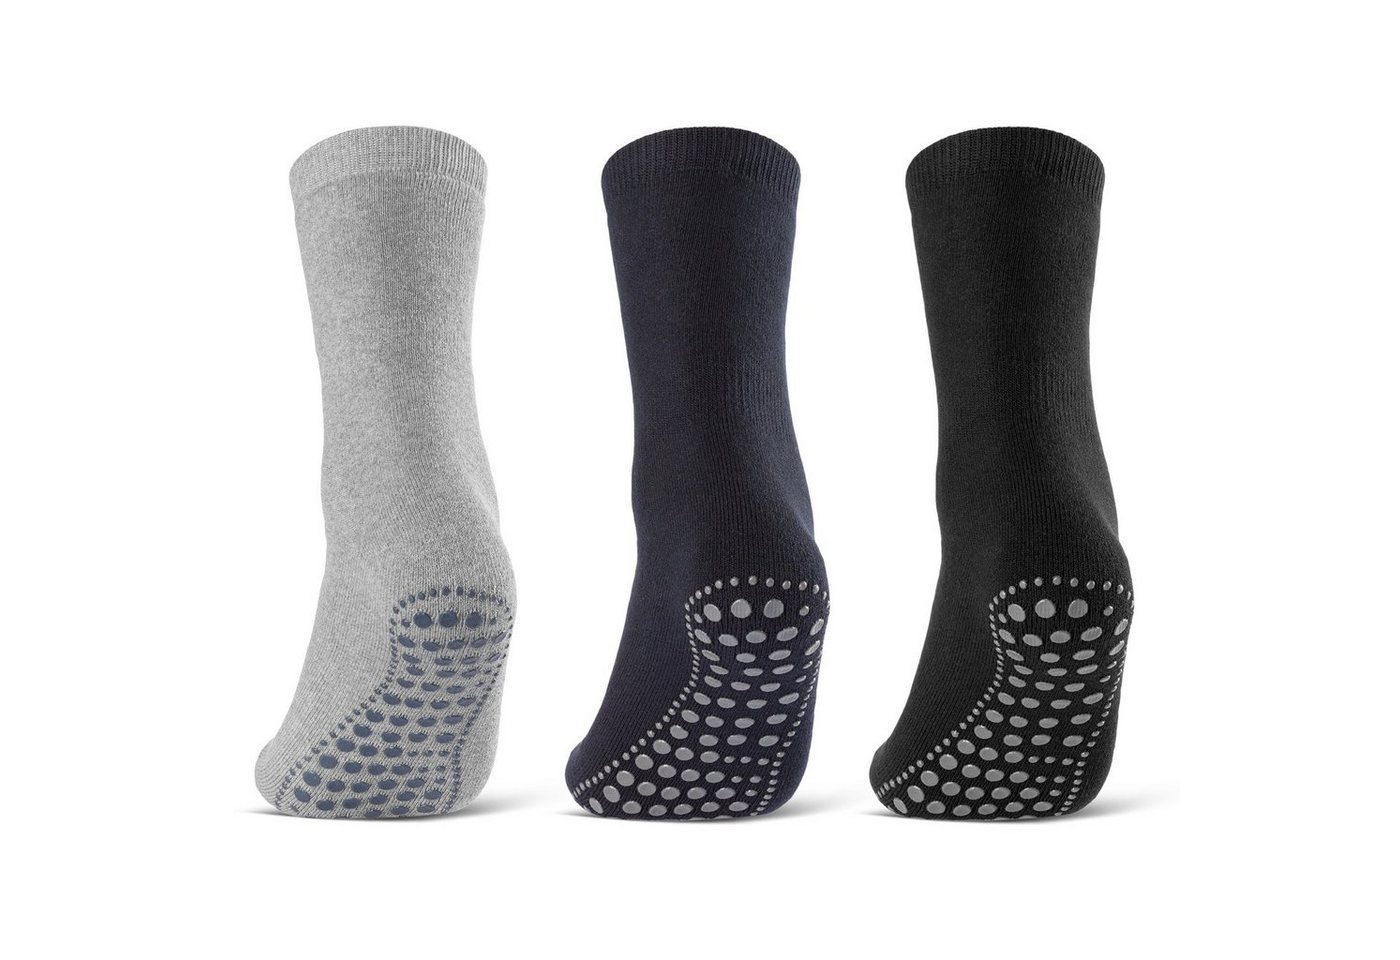 sockenkauf24 ABS-Socken 3 oder 6 Paar "Premium" Anti Rutsch Socken Damen Herren (Schwarz, Blau, Grau, 3-Paar, 35-38) ABS Socken Noppen Stoppersocken - 8600 WP von sockenkauf24